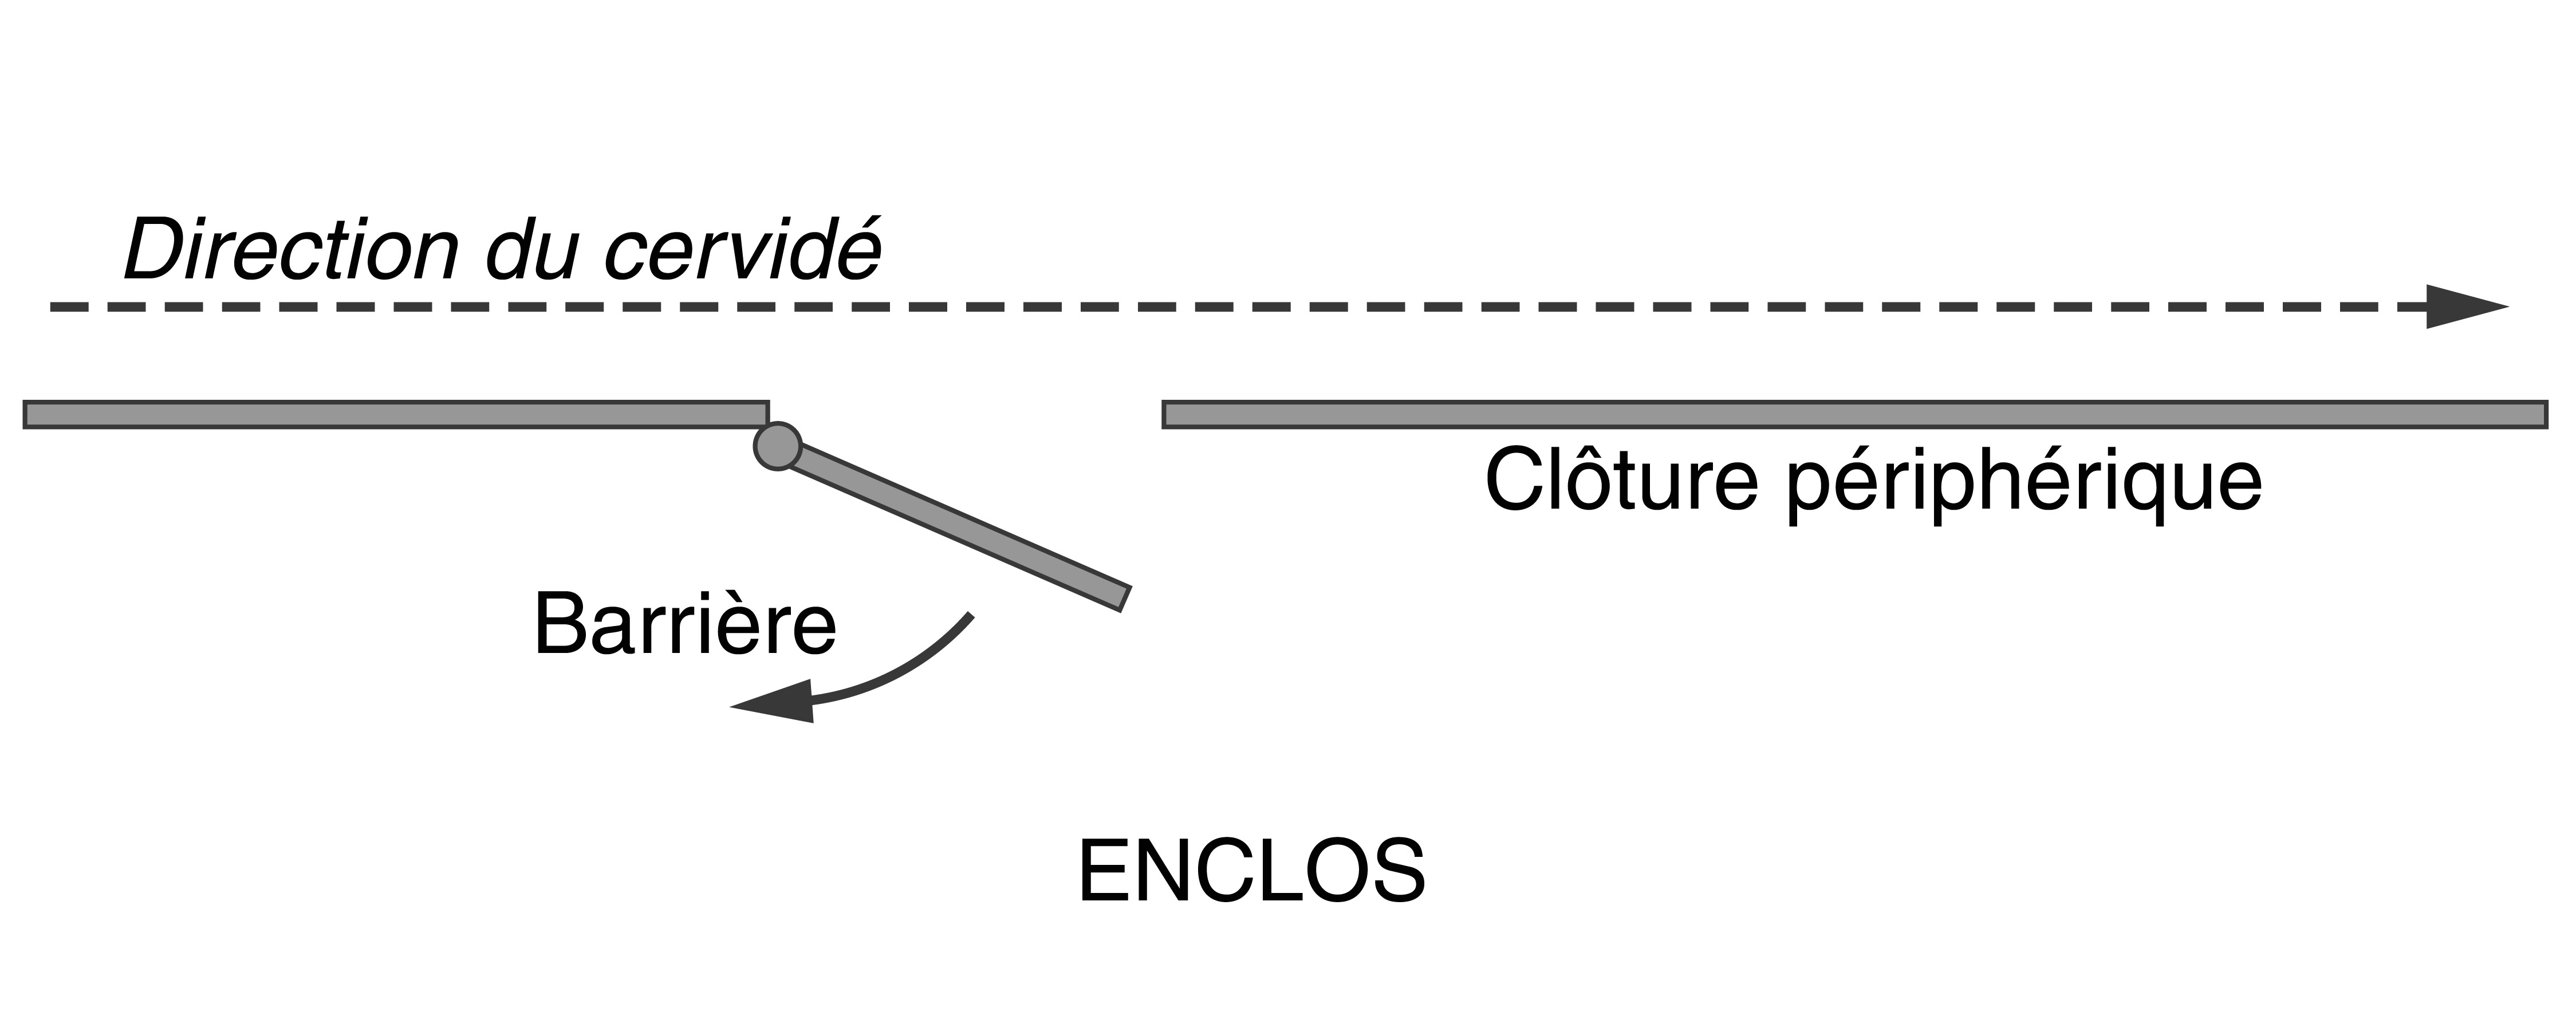 Schéma montrant la direction qu'empruntera le cervid é si la barrière est partiellement ouverte.